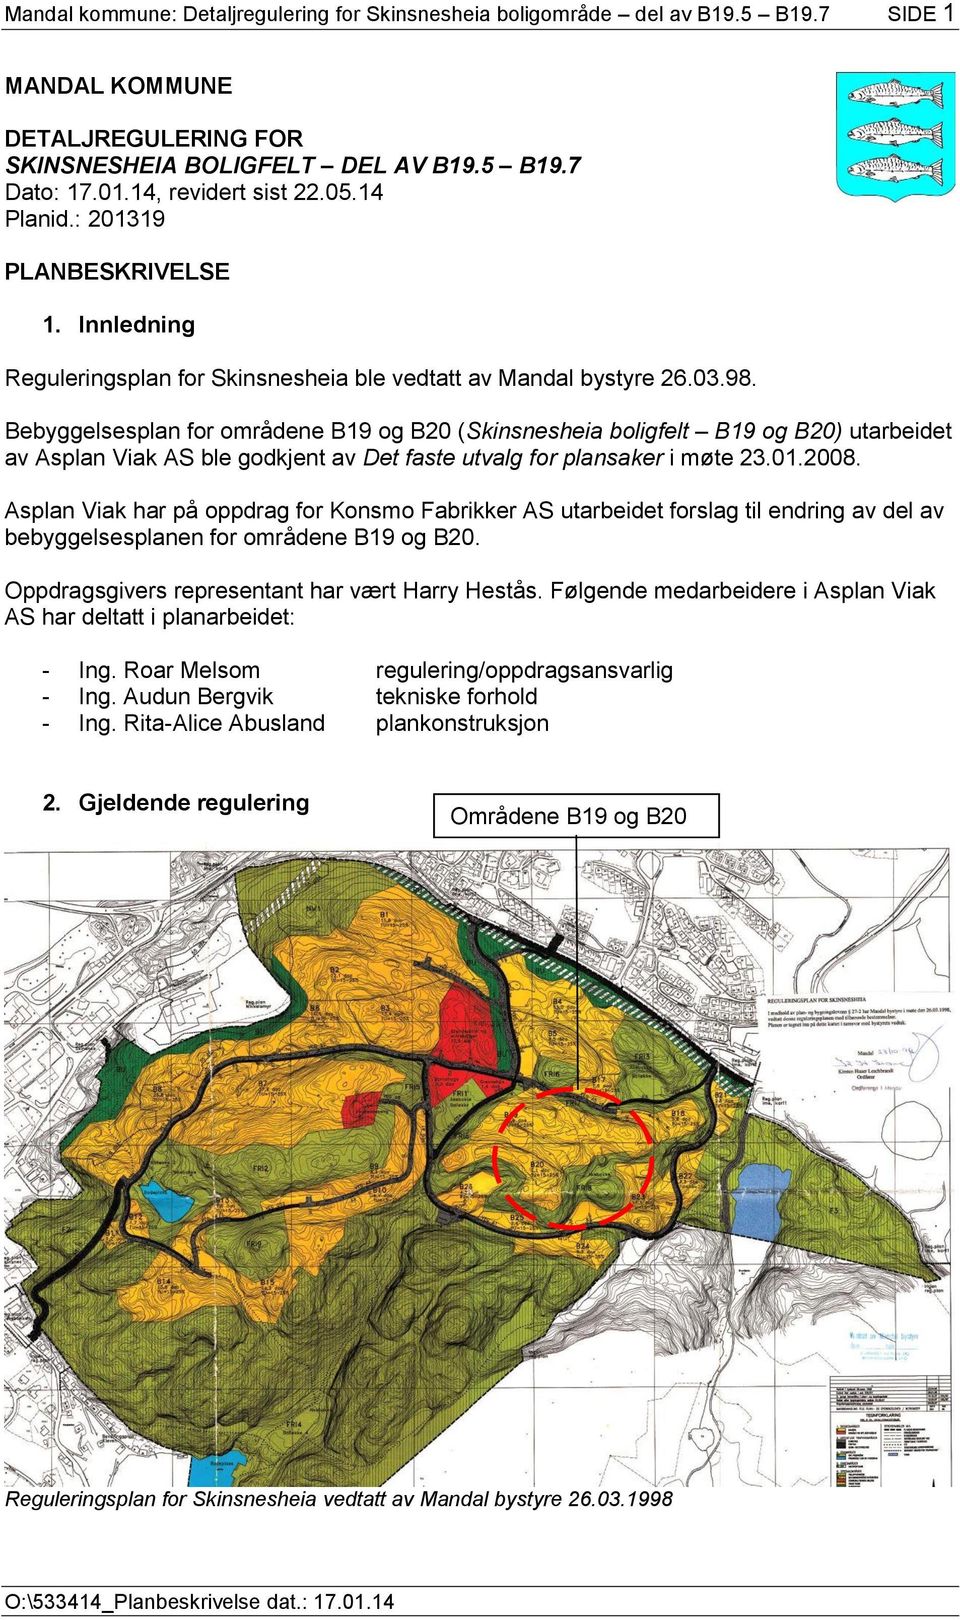 Bebyggelsesplan for områdene B19 og B20 (Skinsnesheia boligfelt B19 og B20) utarbeidet av Asplan Viak AS ble godkjent av Det faste utvalg for plansaker i møte 23.01.2008.